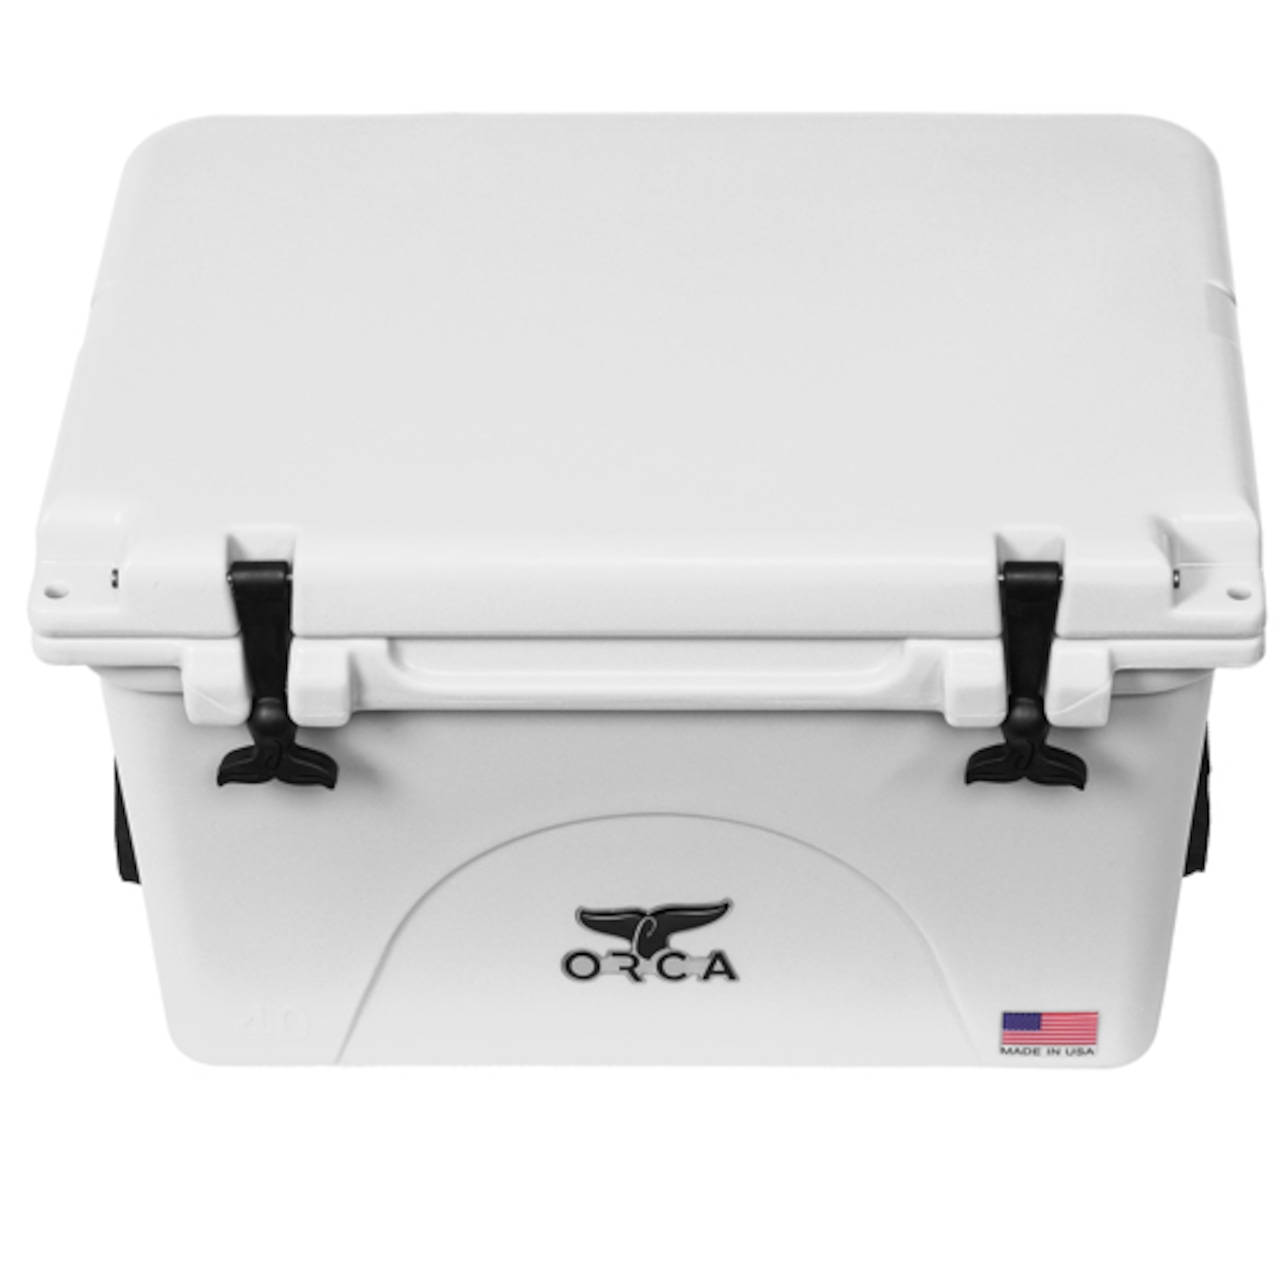 ORCA Coolers 40 Quart オルカ クーラー ボックス キャンプ用品 アウトドア キャンプ グッズ 保冷 クッキング ドリンク オルカクーラーズジャパン